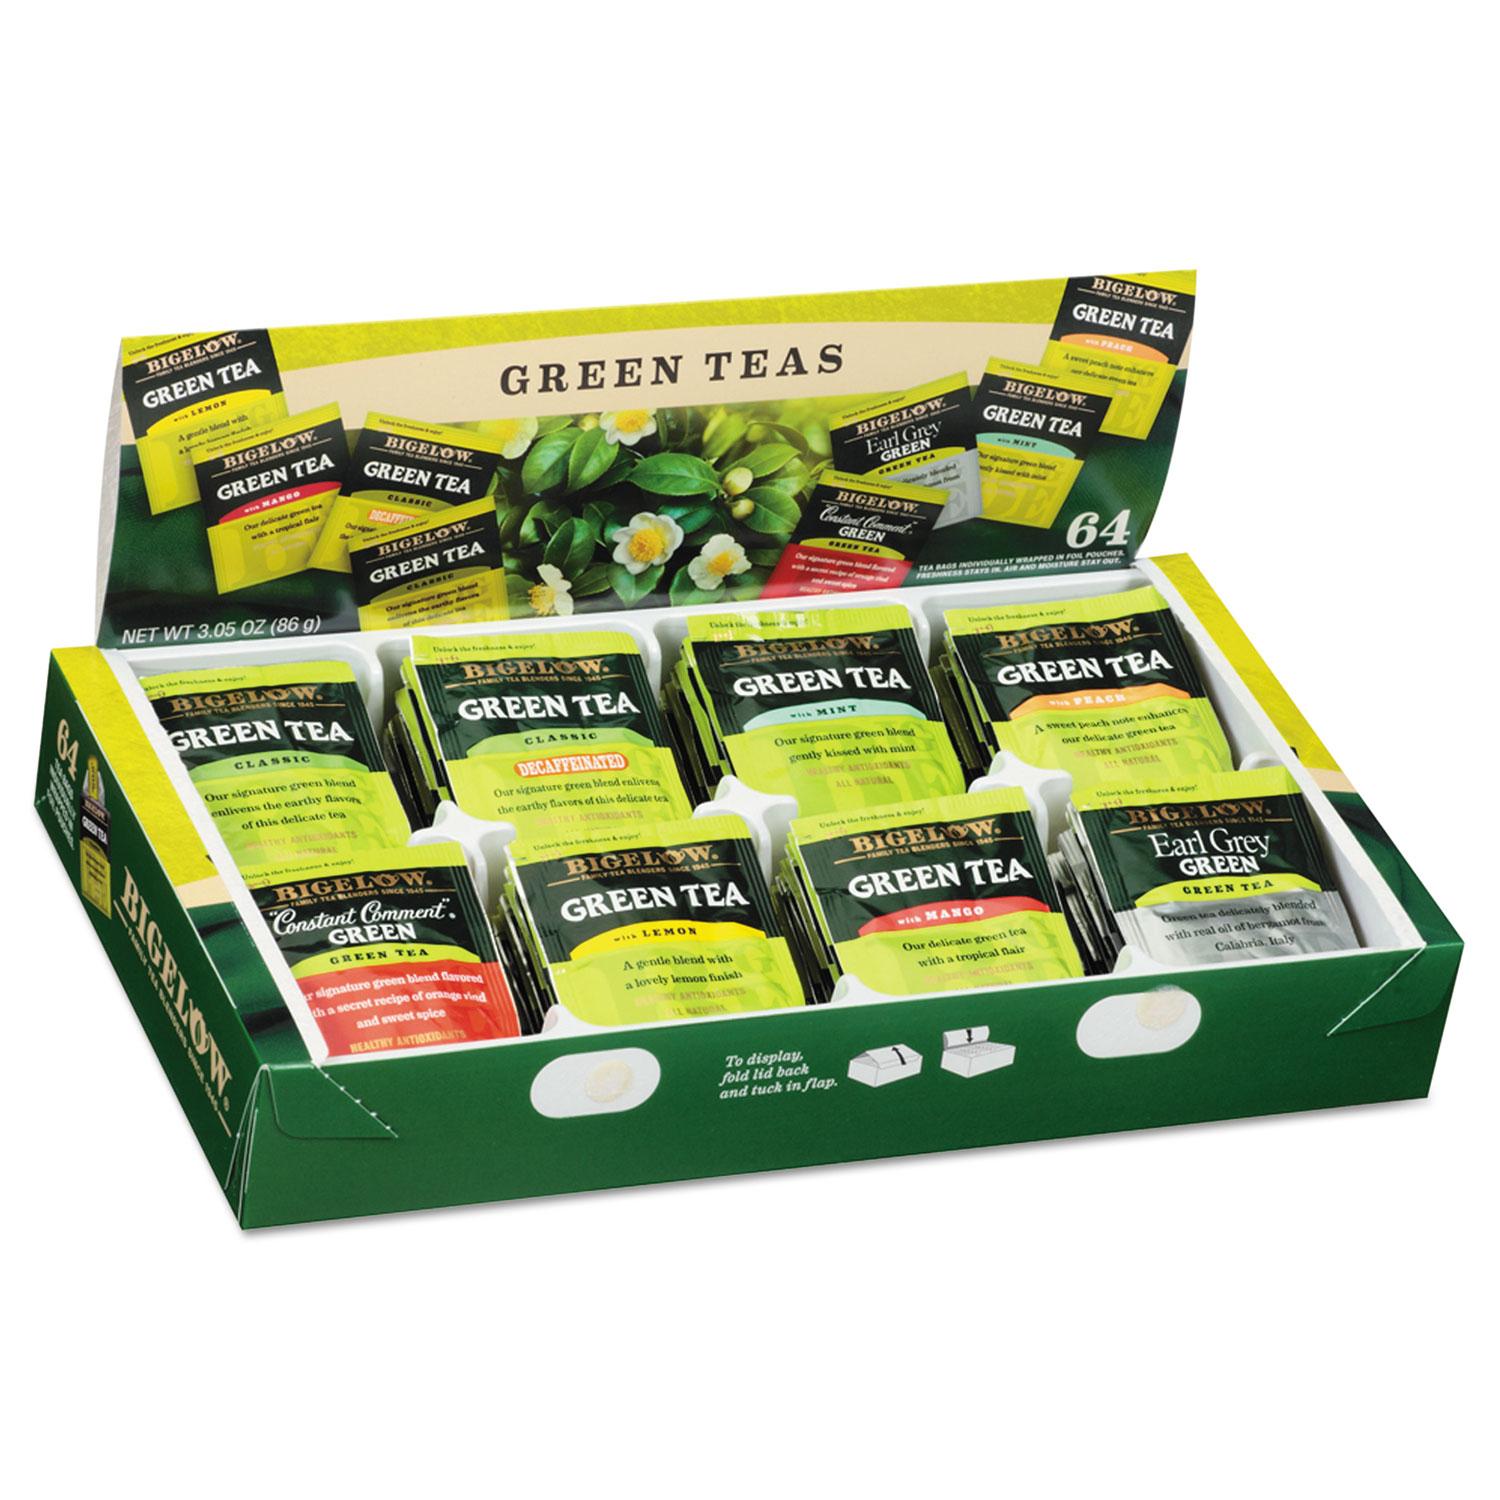  Bigelow RCB30568CT Green Tea Assortment, Tea Bags, 64/Box, 6 Boxes/Carton (BTC30568CT) 